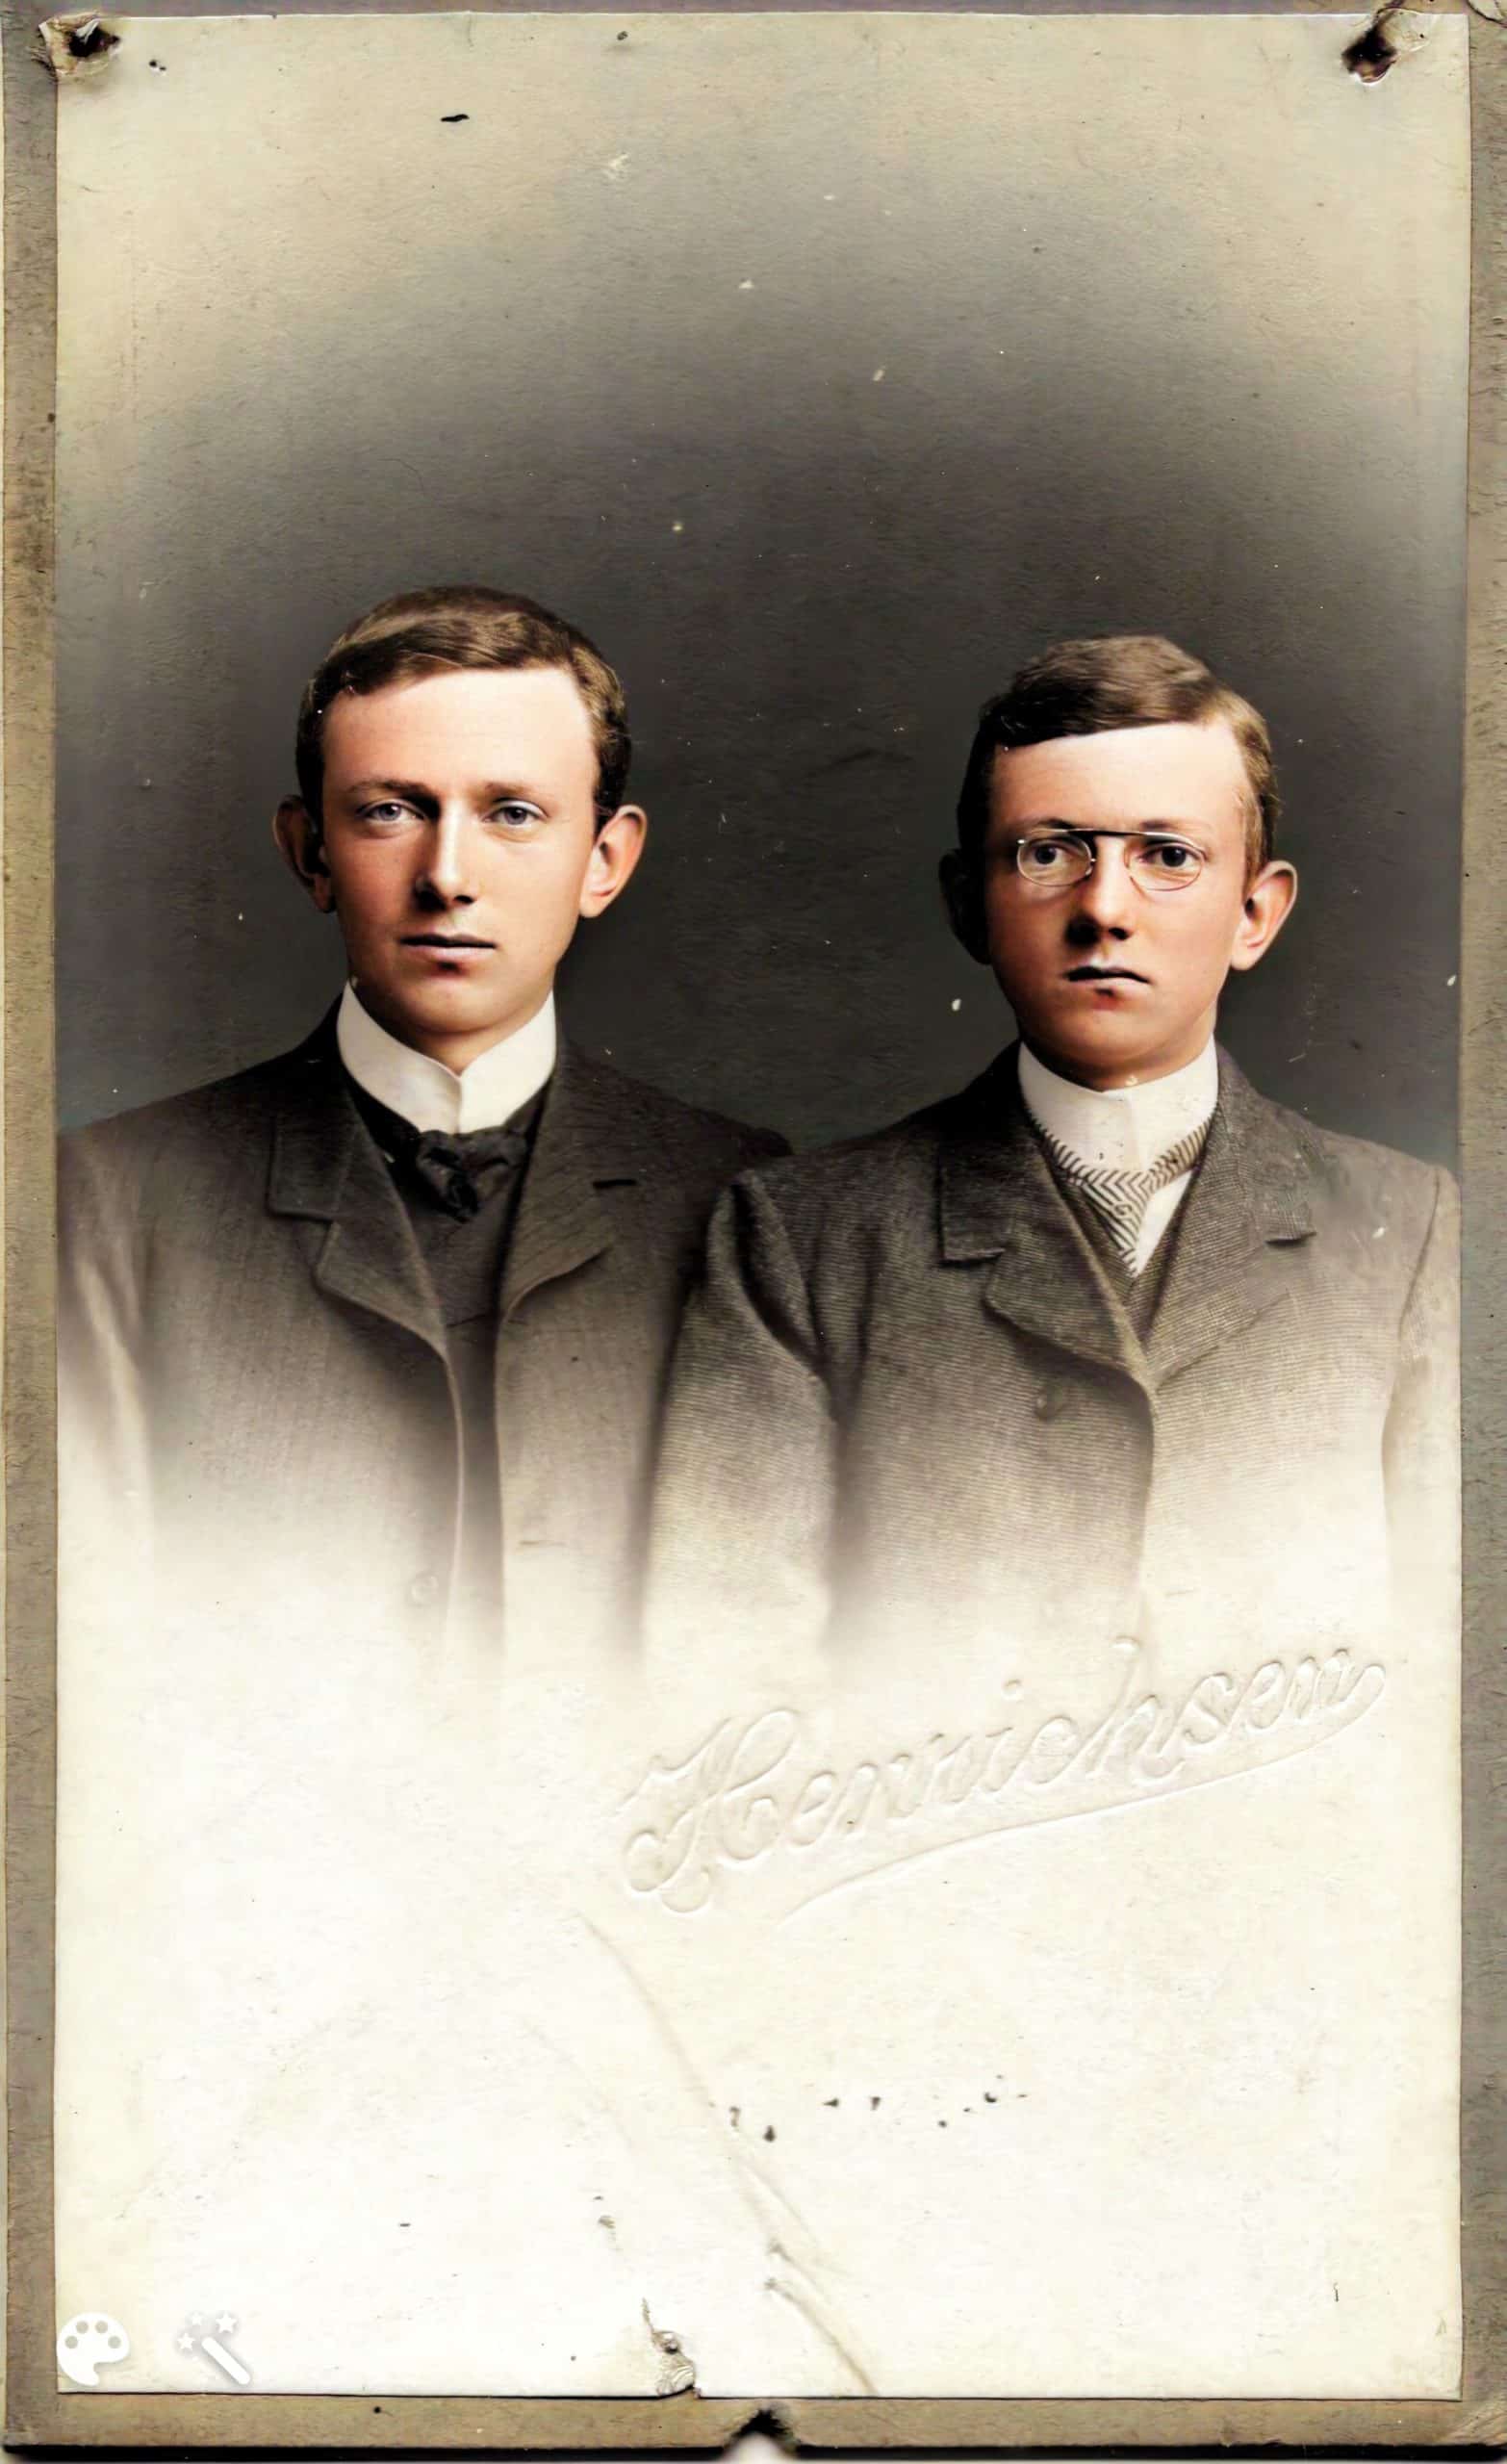 תמונה של האחים לבית הייג, תורקילד ותומאס. התמונה נצבעה בעזרת MyHeritage InColor™